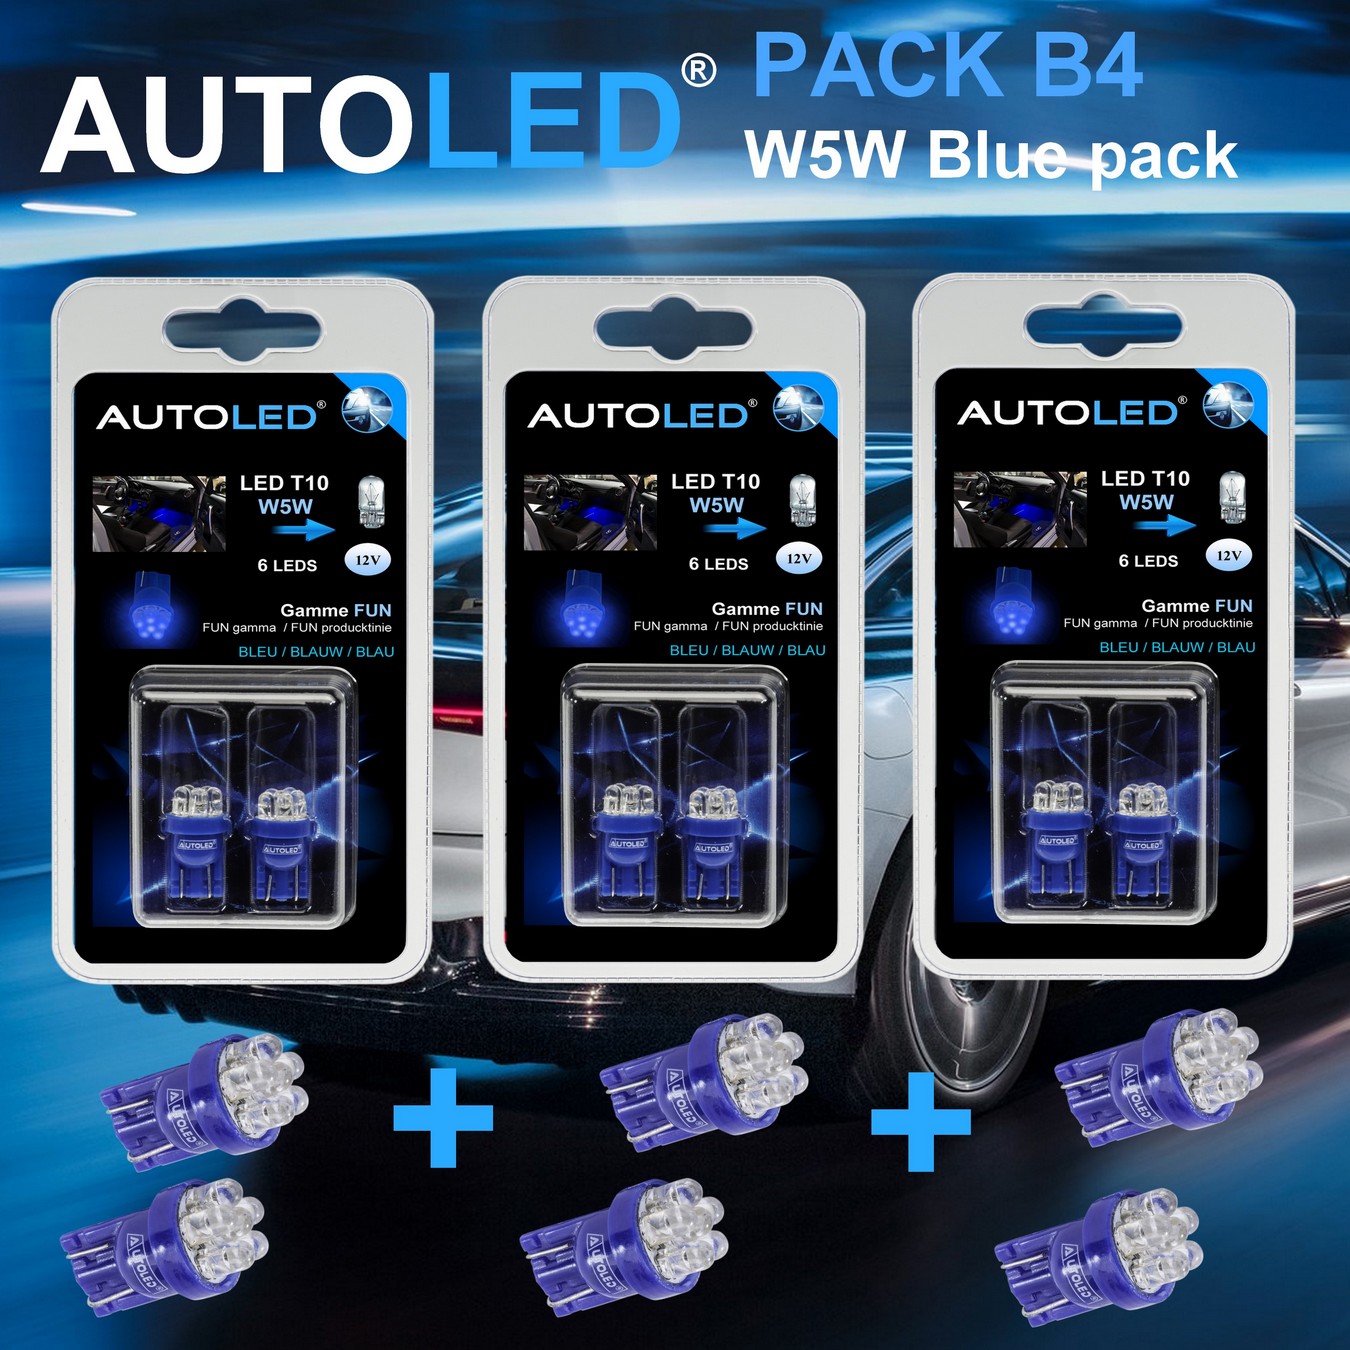 Pack-6-ampoules-led-bleu-habitacle-plafonnier-boite -a gants-coffre-t10-6leds-w5w-personnalisation-eclairage-led-autoled-pack-b4.2